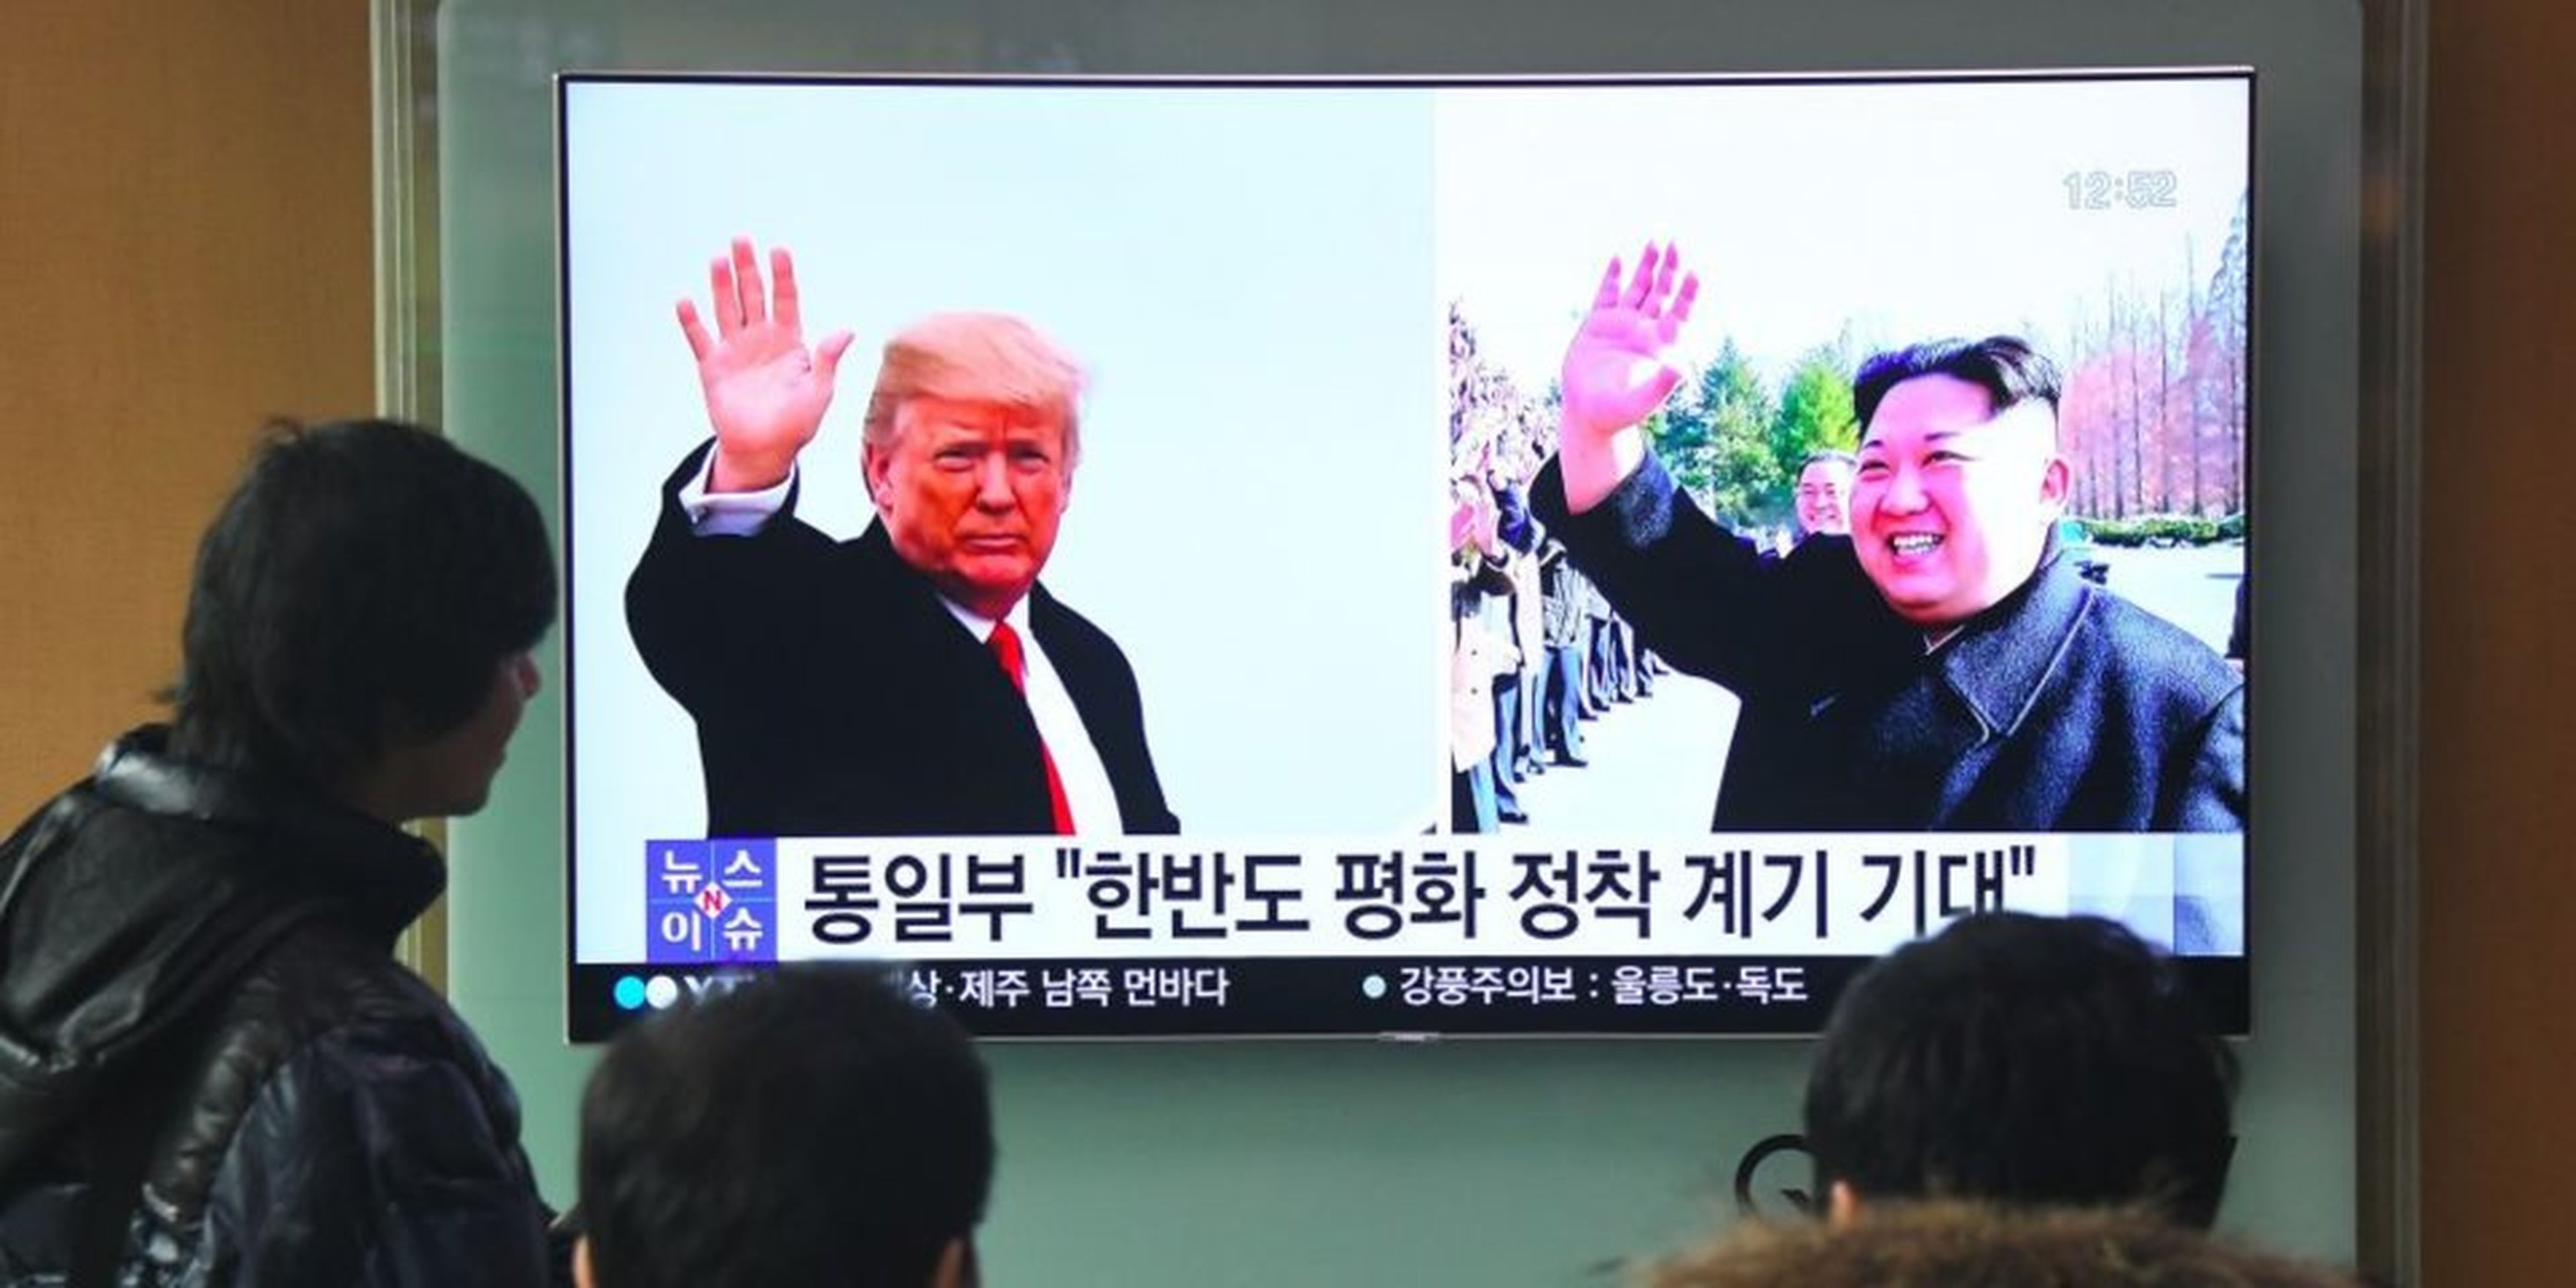 Personas ven las noticias con imágenes del presidente de Estados Unidos, Donald Trump, y del líder norcoreano, Kim Jong Un, en una estación de tren de Seúl